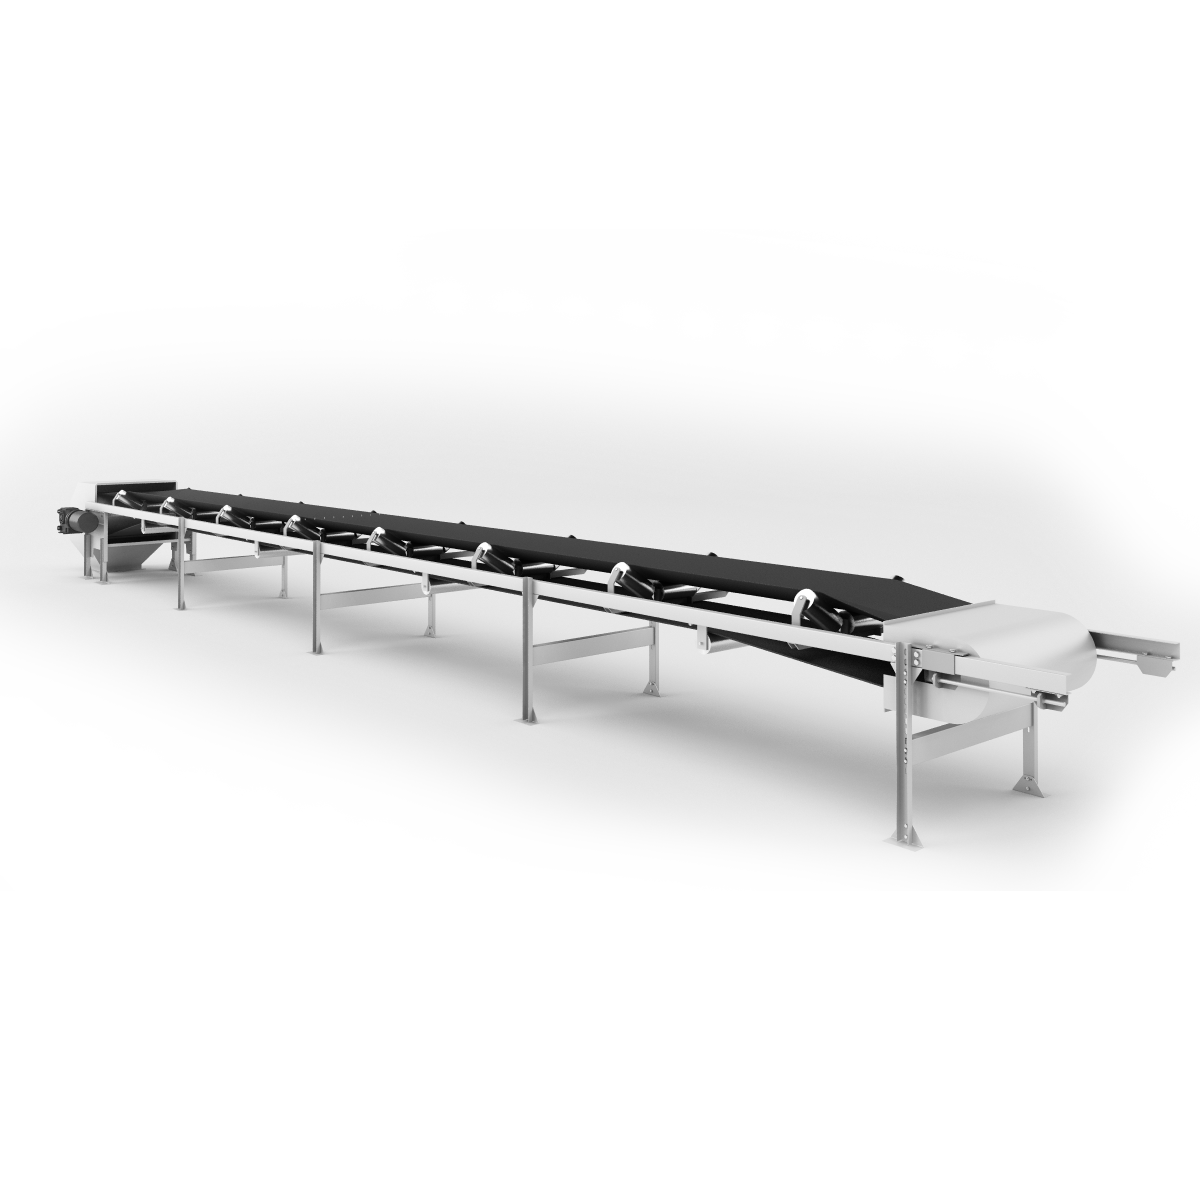 Zeo-bc belt conveyor